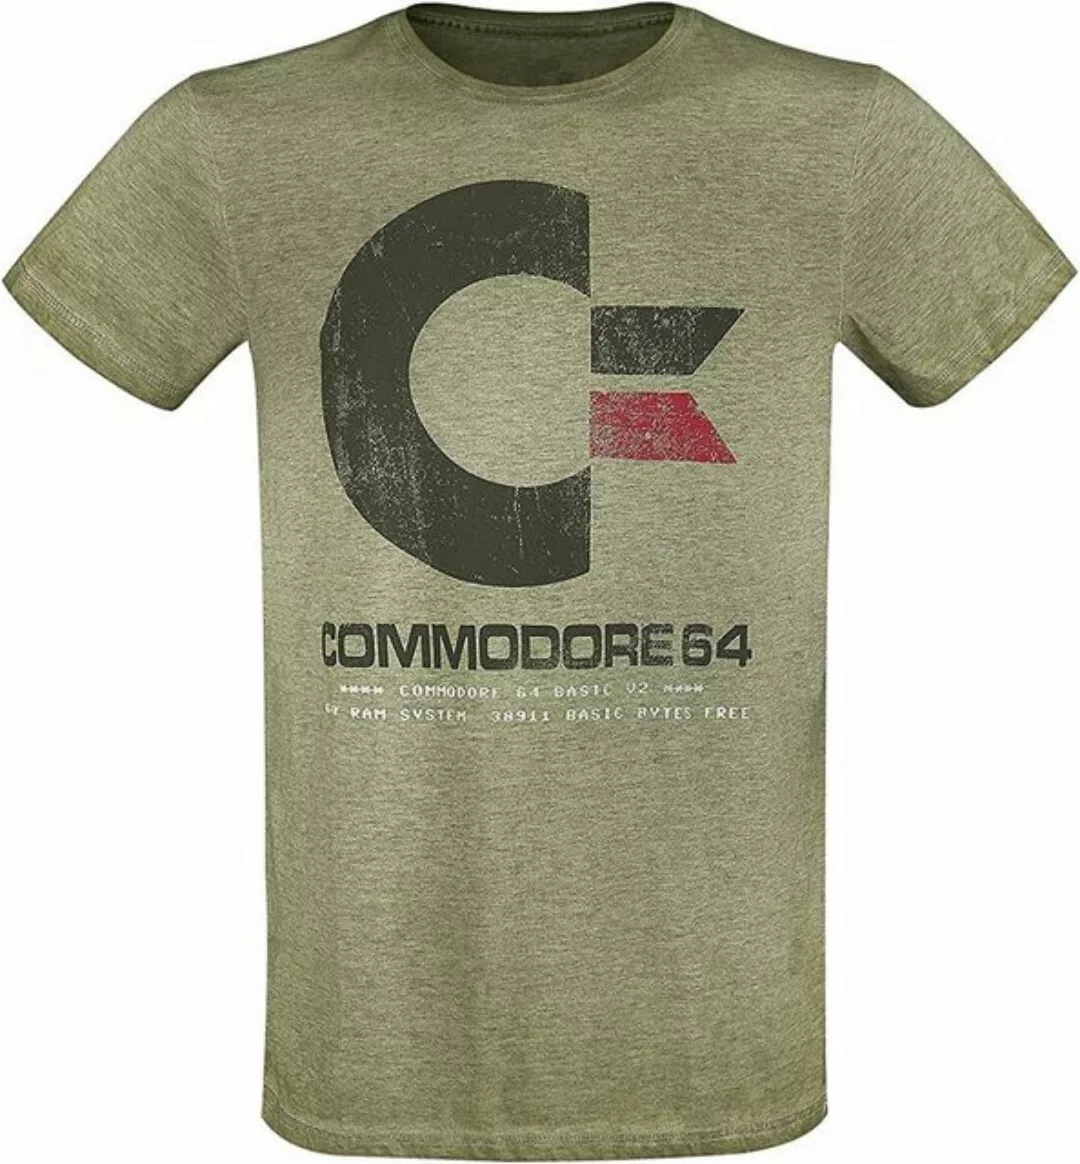 Bioworld Print-Shirt Commodore 64 C64 Logo - Vintage Männer T-Shirt grün me günstig online kaufen